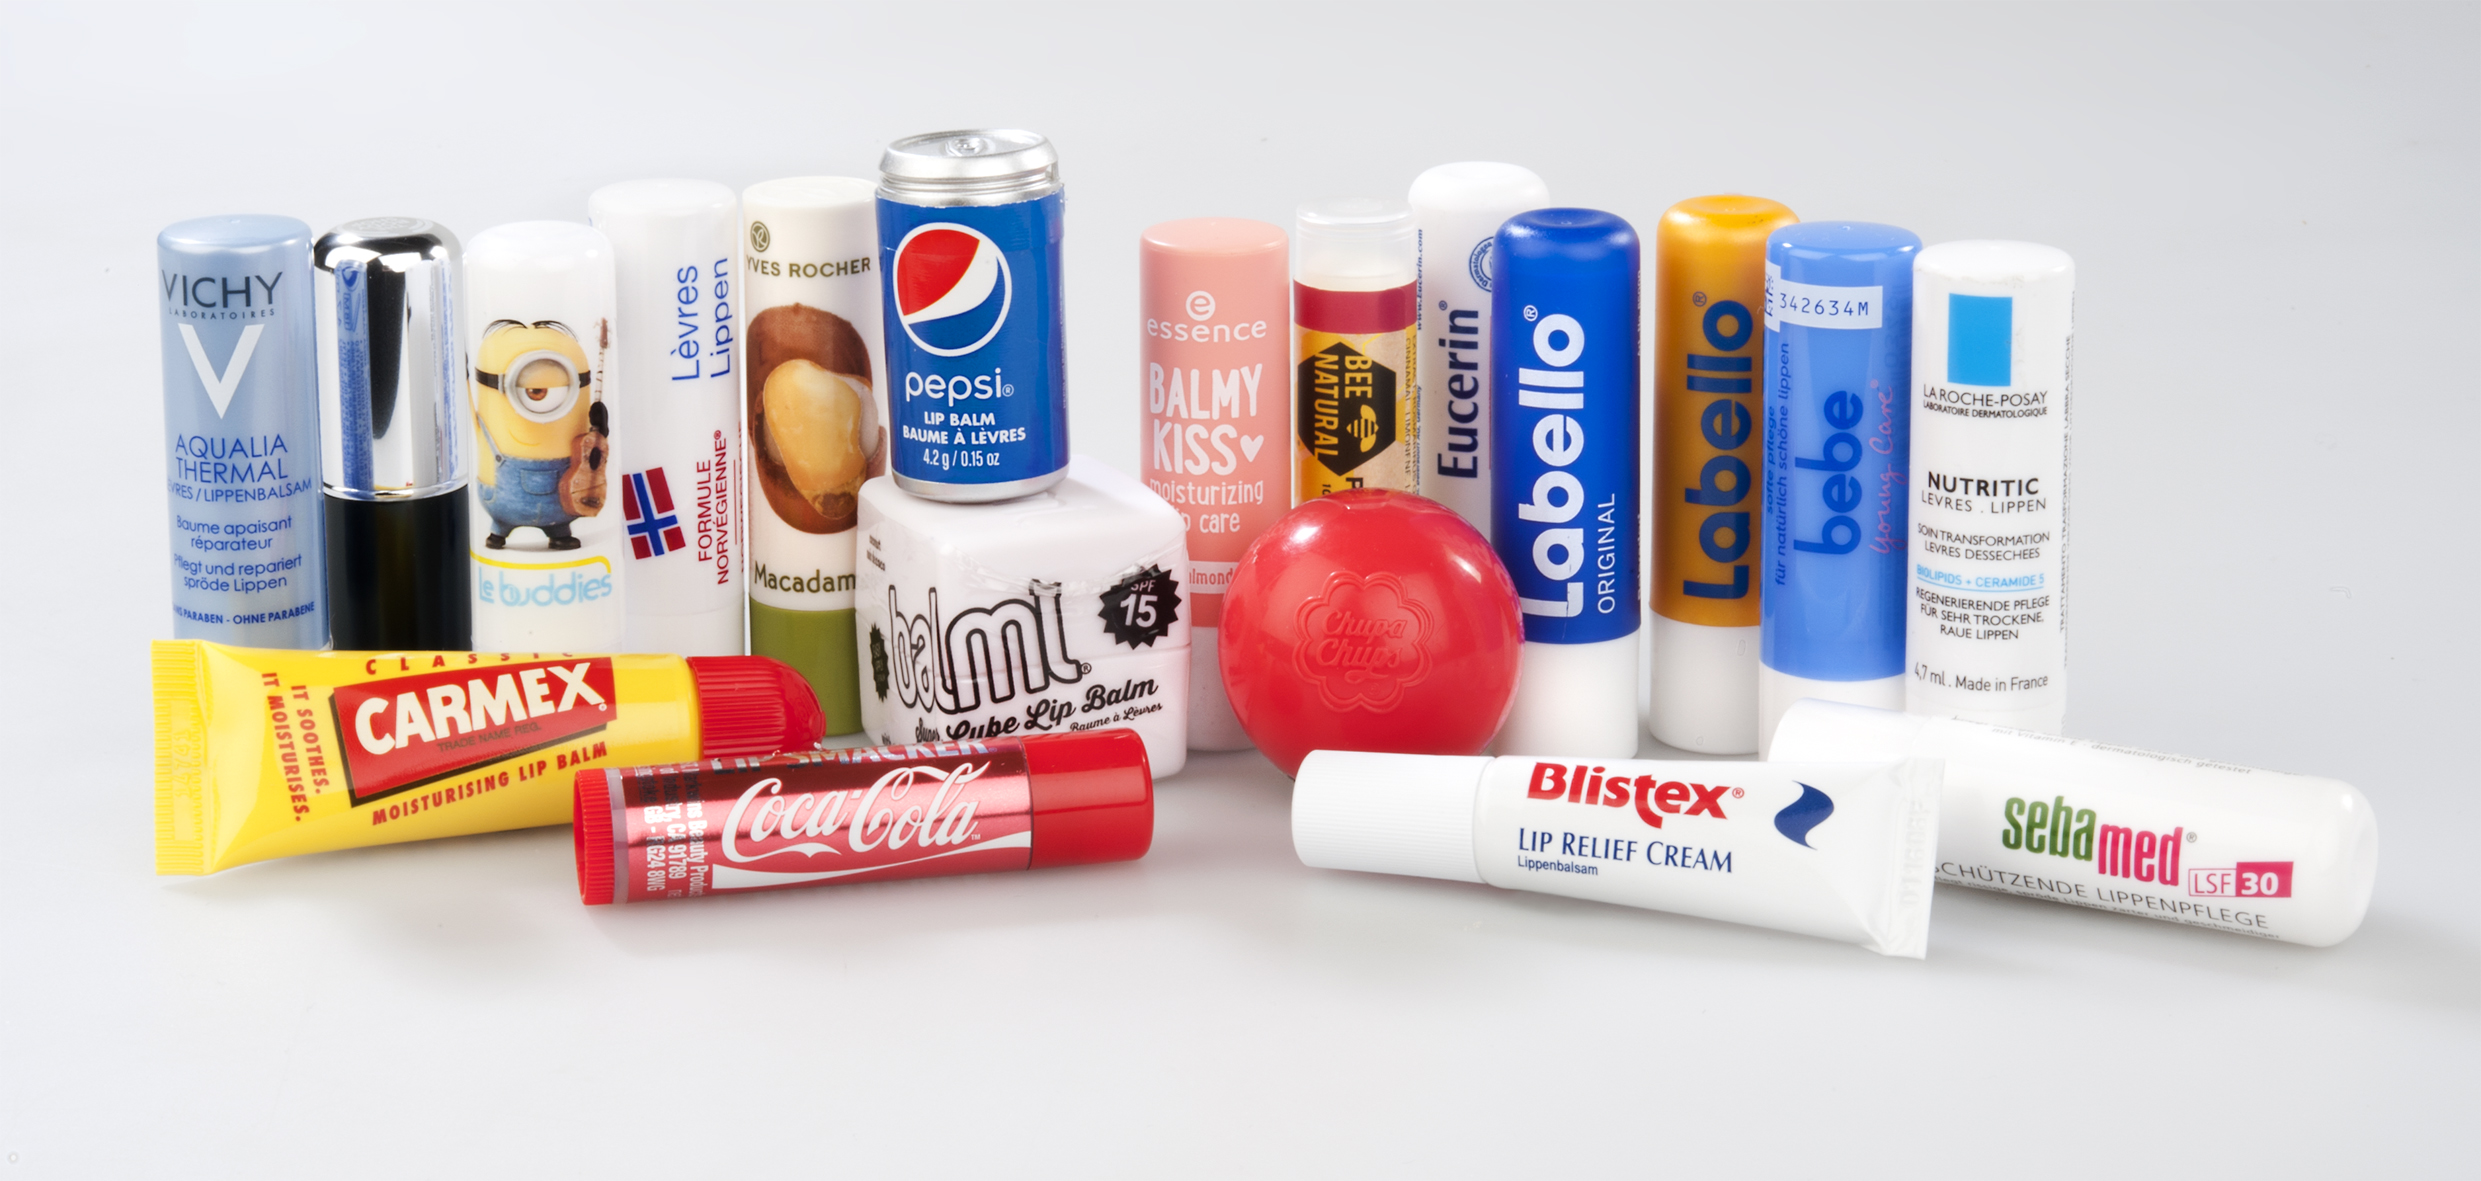 Lippenpflegemittel: 18 von 35 Produkten mit kritischen Stoffen belastet (+Video)